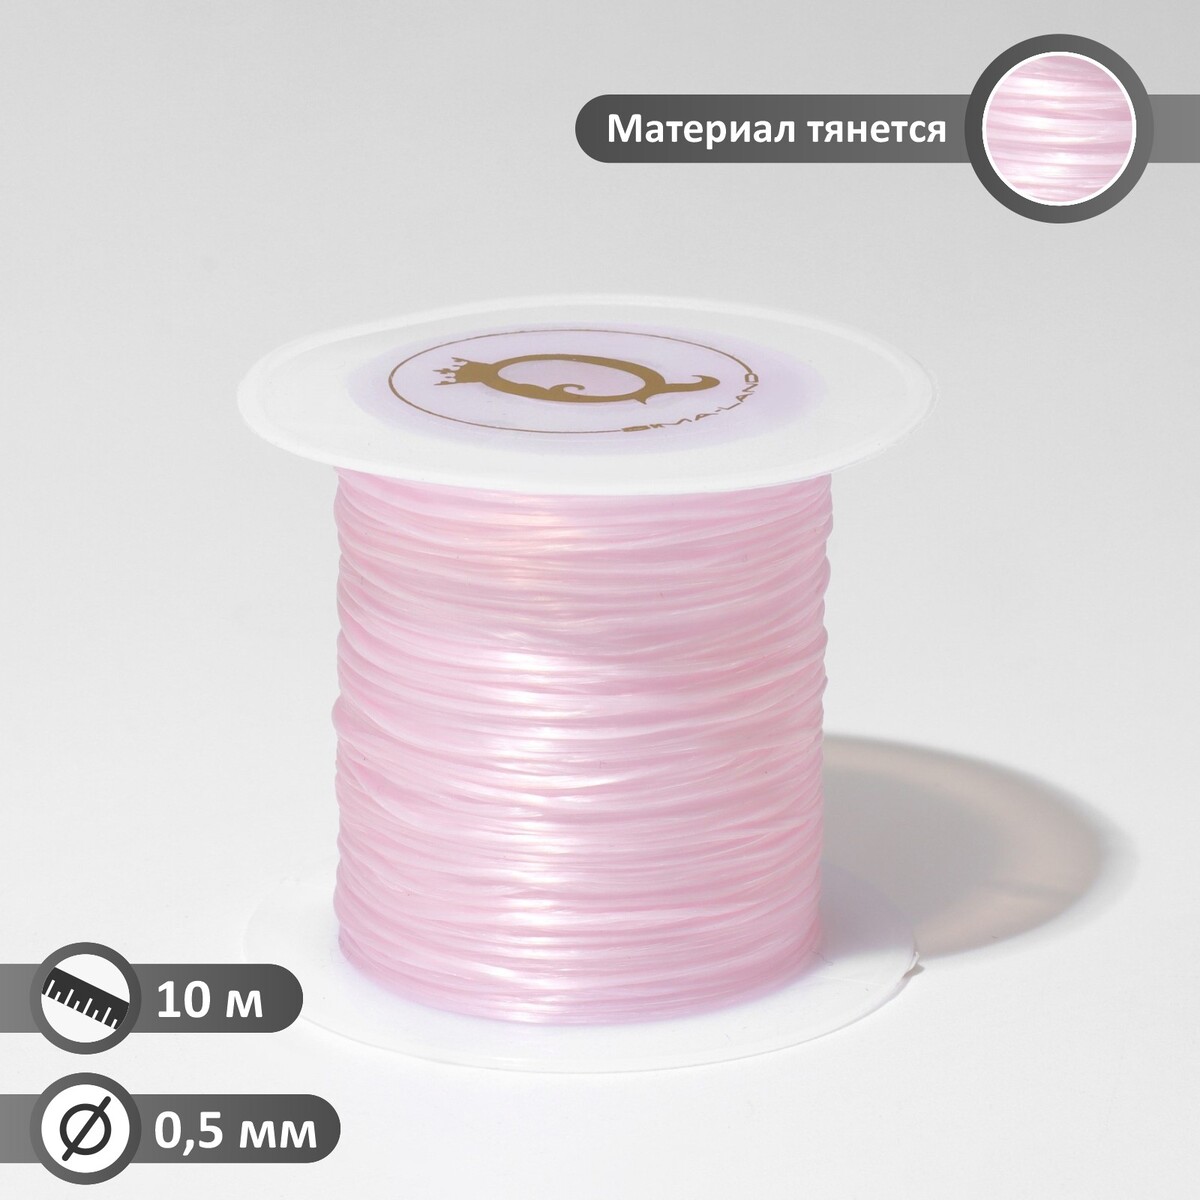 Нить силиконовая (резинка) d=0,5 мм, l=10 м (прочность 2250 денье), цвет светло-розовый нить силиконовая резинка d 0 5 мм l 10 м прочность 2250 денье неоновый желтый